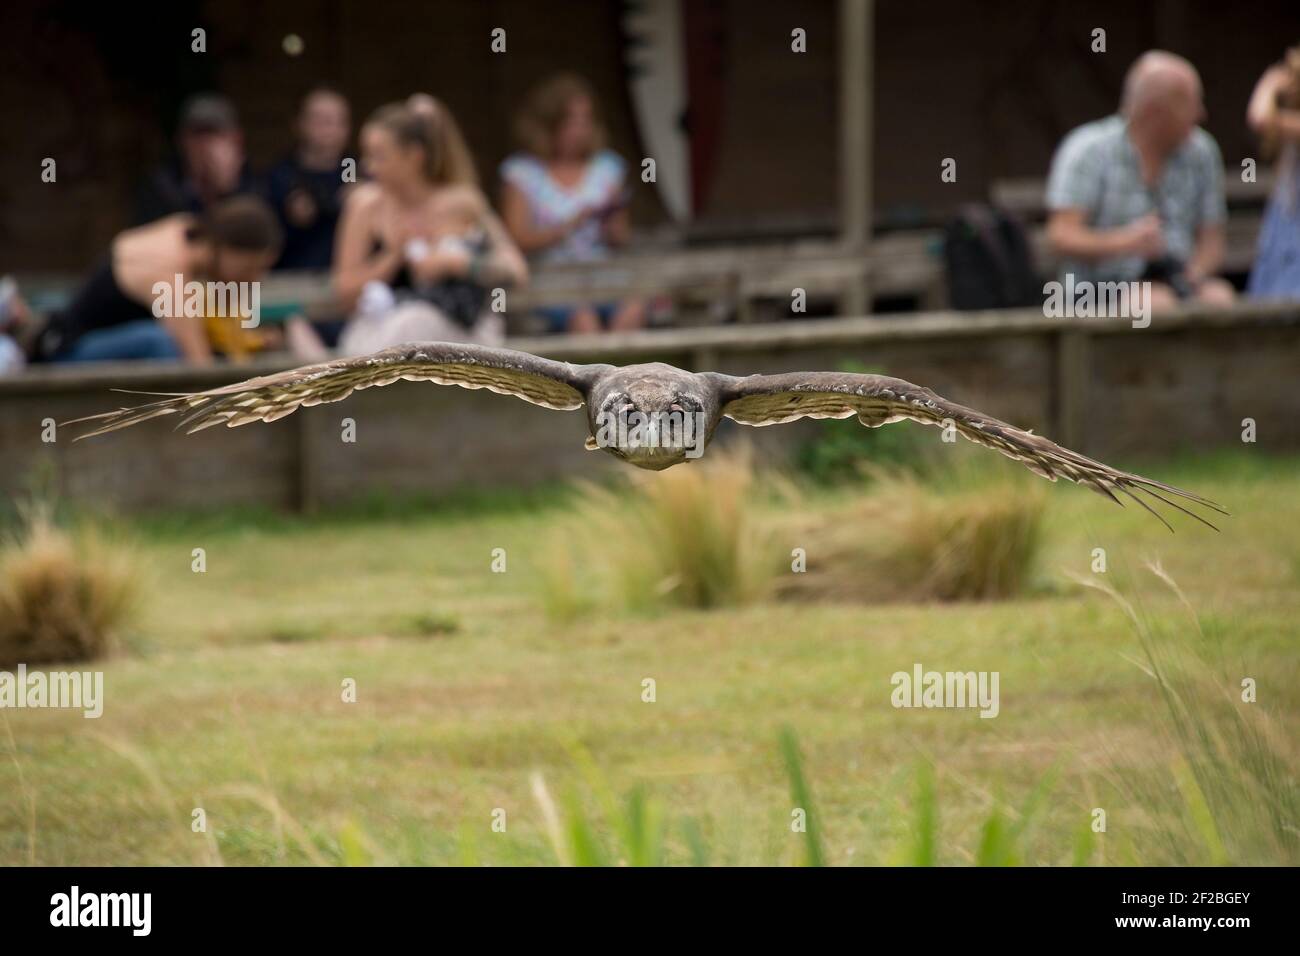 L'aigle-hibou de Verreaux (Bubo lacteus), volant vers la caméra, lors d'une exposition à la mouche au Hawk Conservancy Trust à Weyhill, en août Banque D'Images